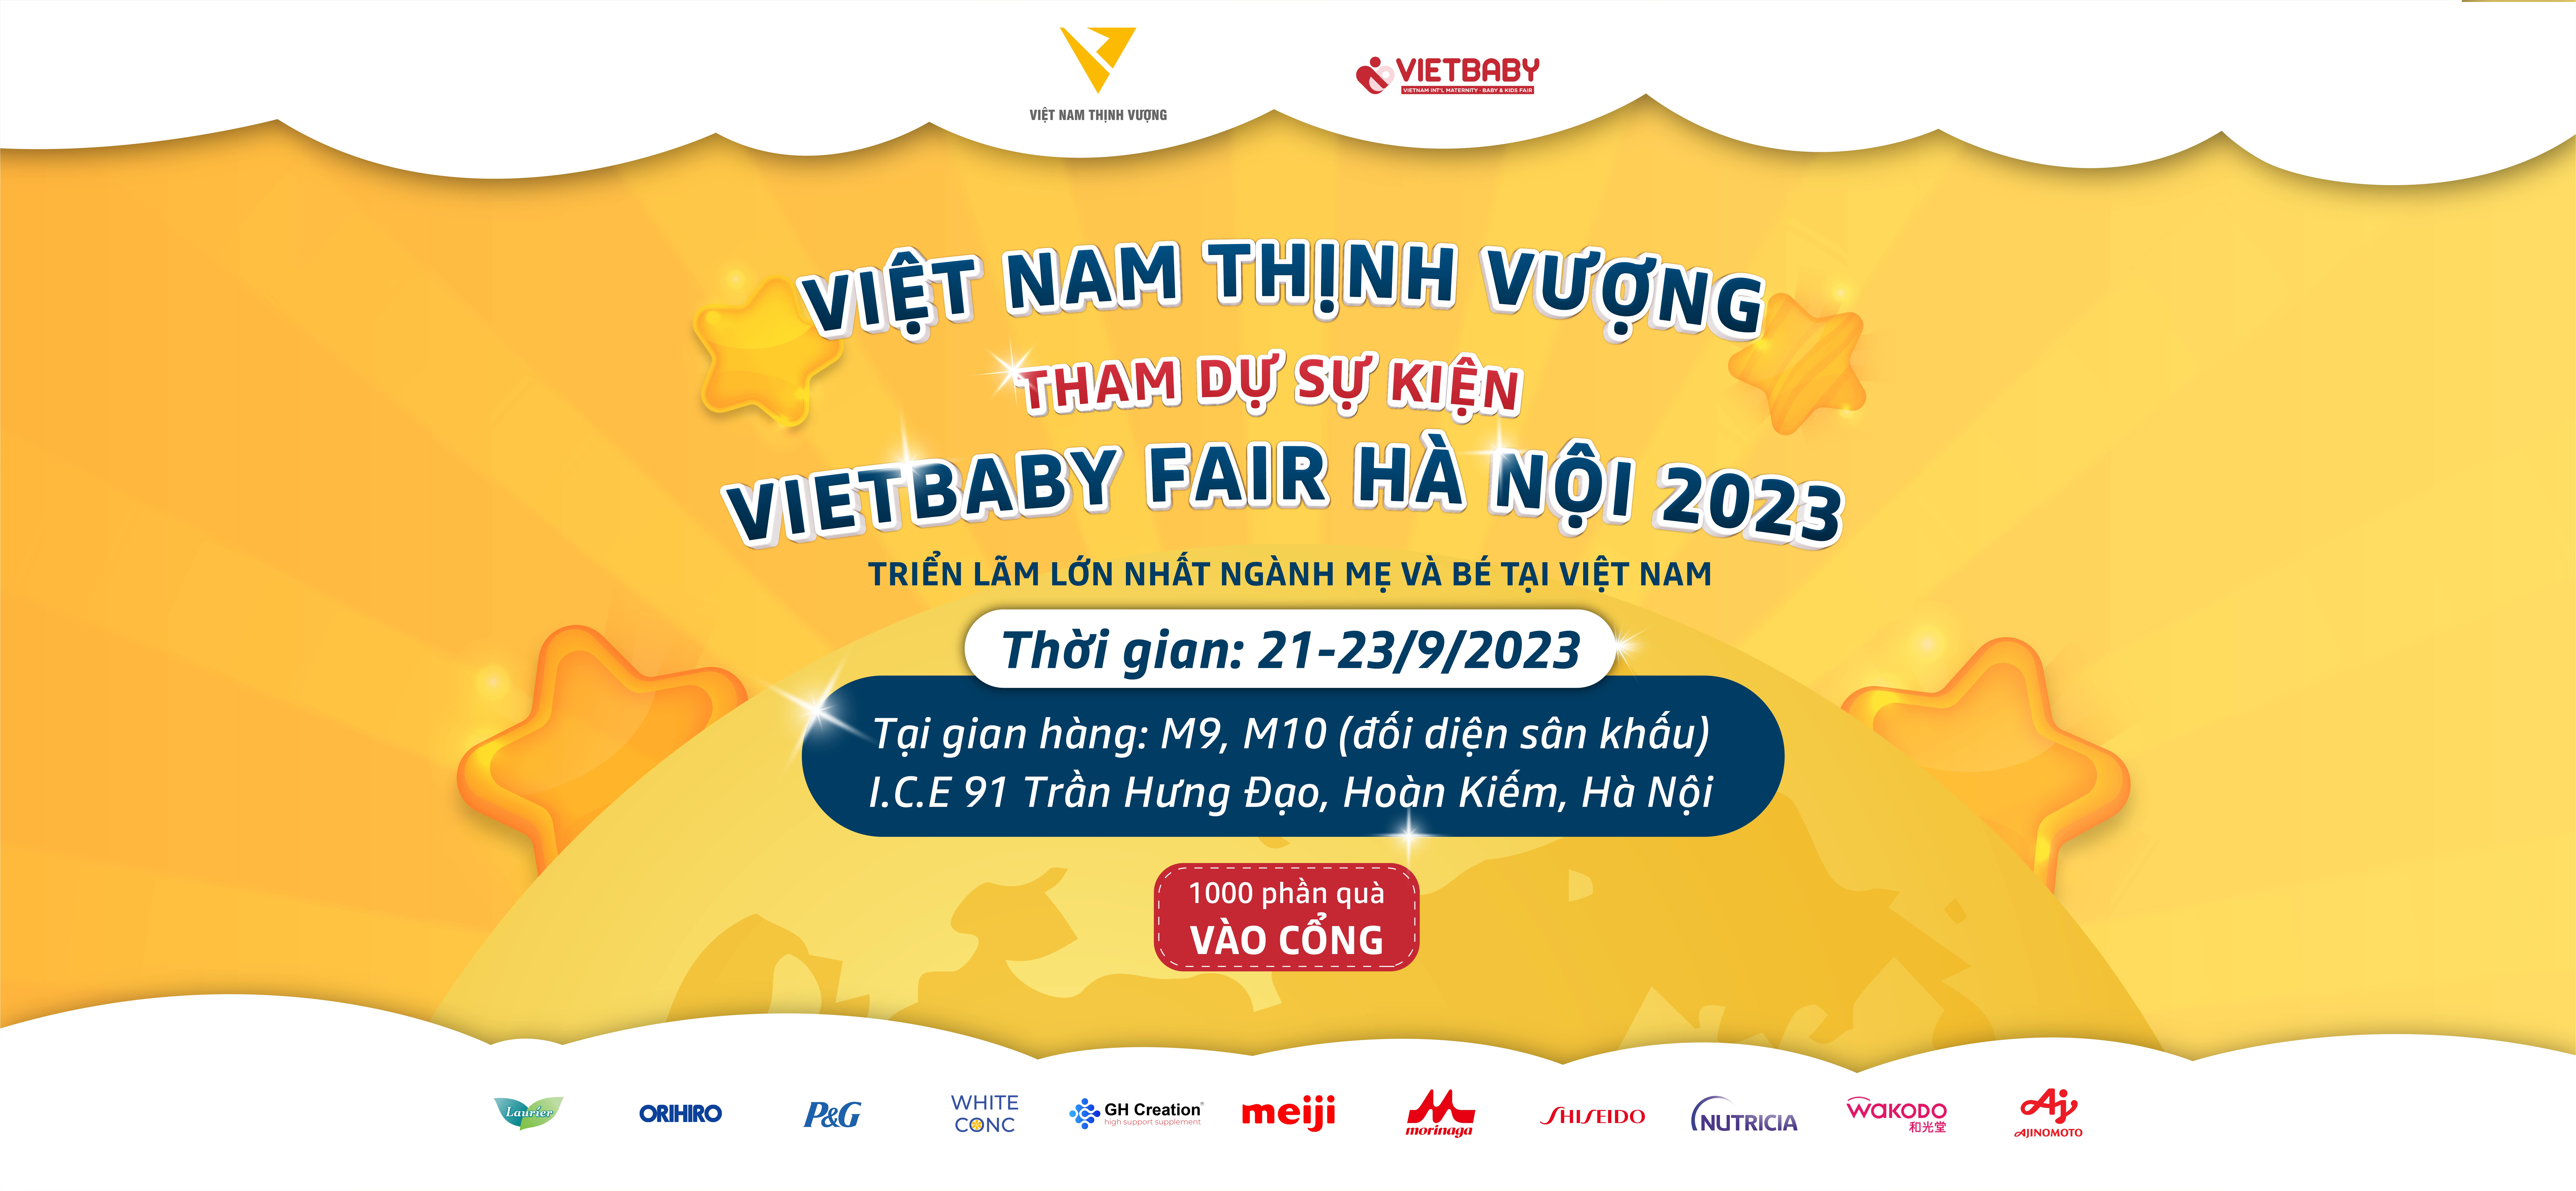 Việt Nam Thịnh Vượng tham gia Triển lãm Mẹ và Bé lớn nhất Việt Nam